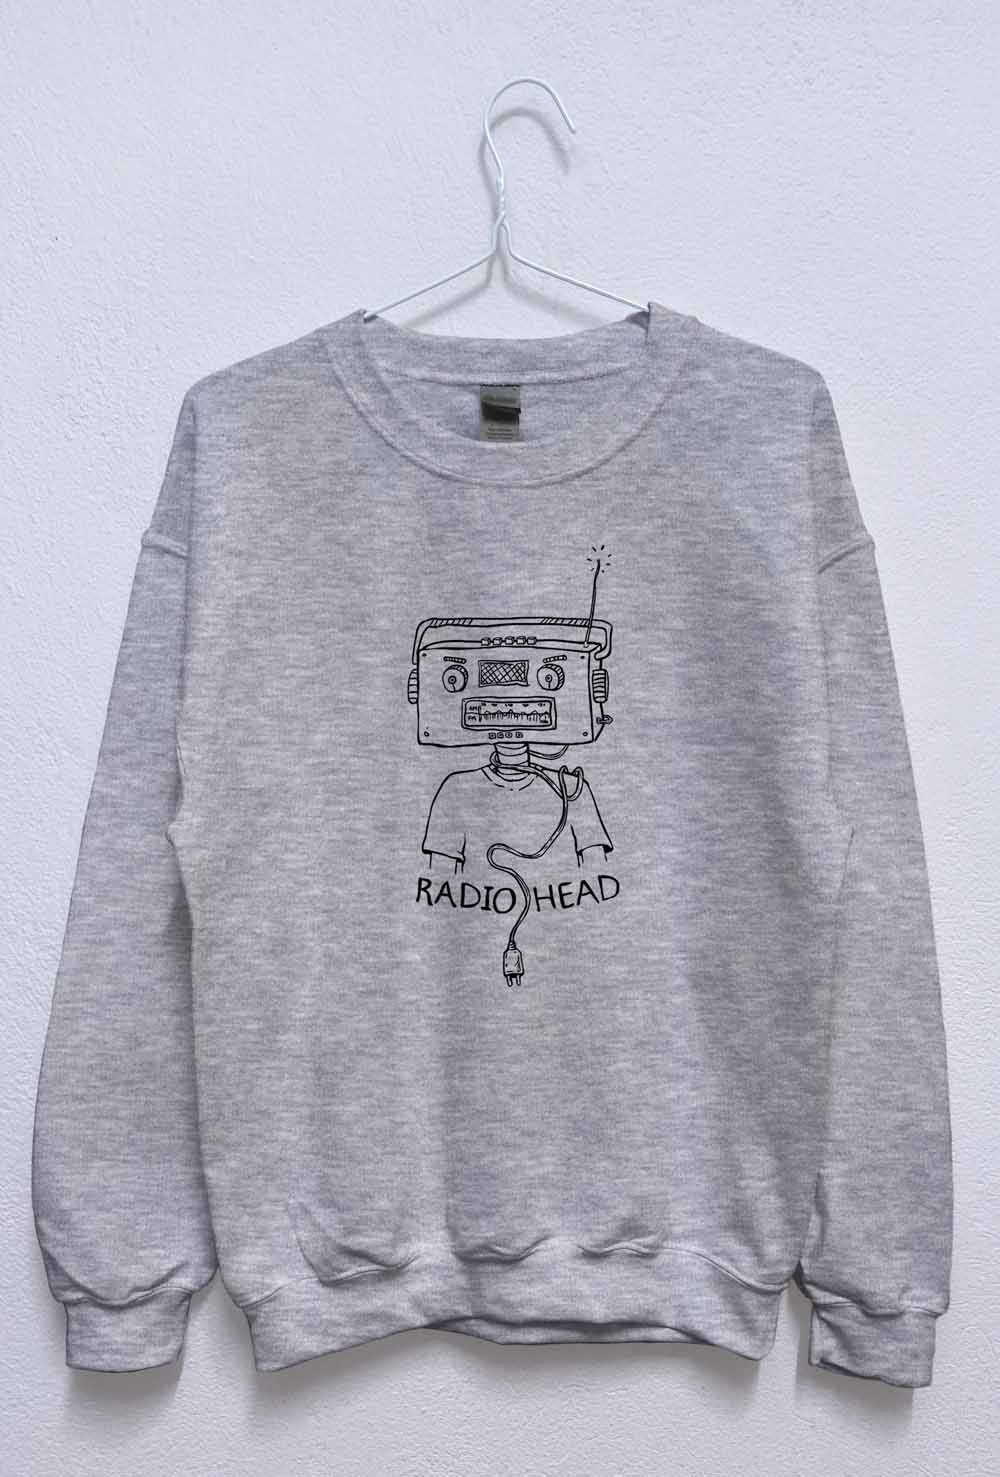 radiohead black grey sweatshirt